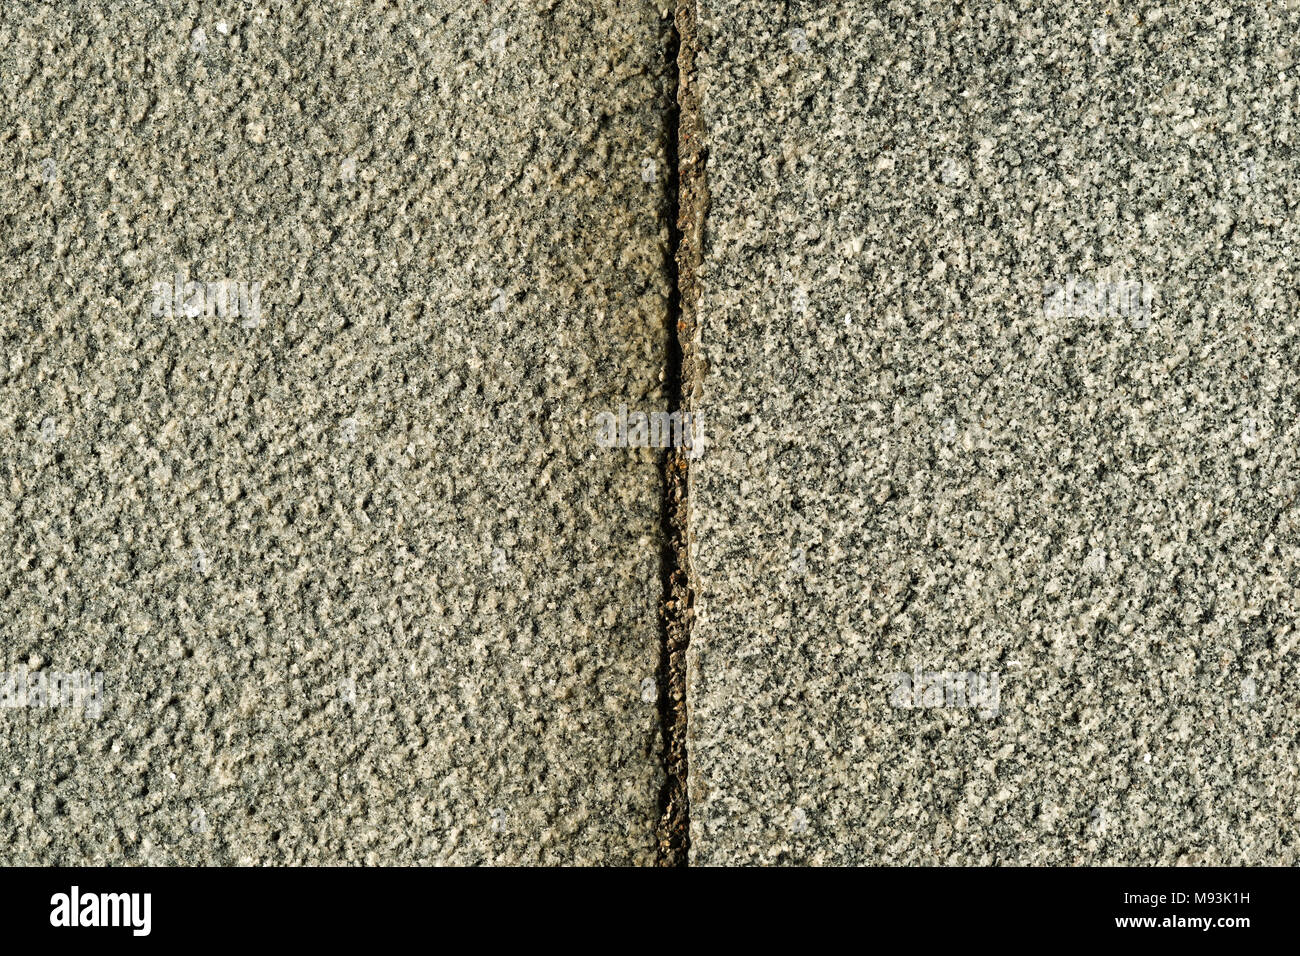 Rauhe Granit Stein Textur geteilt durch die senkrechte Naht Stockfoto